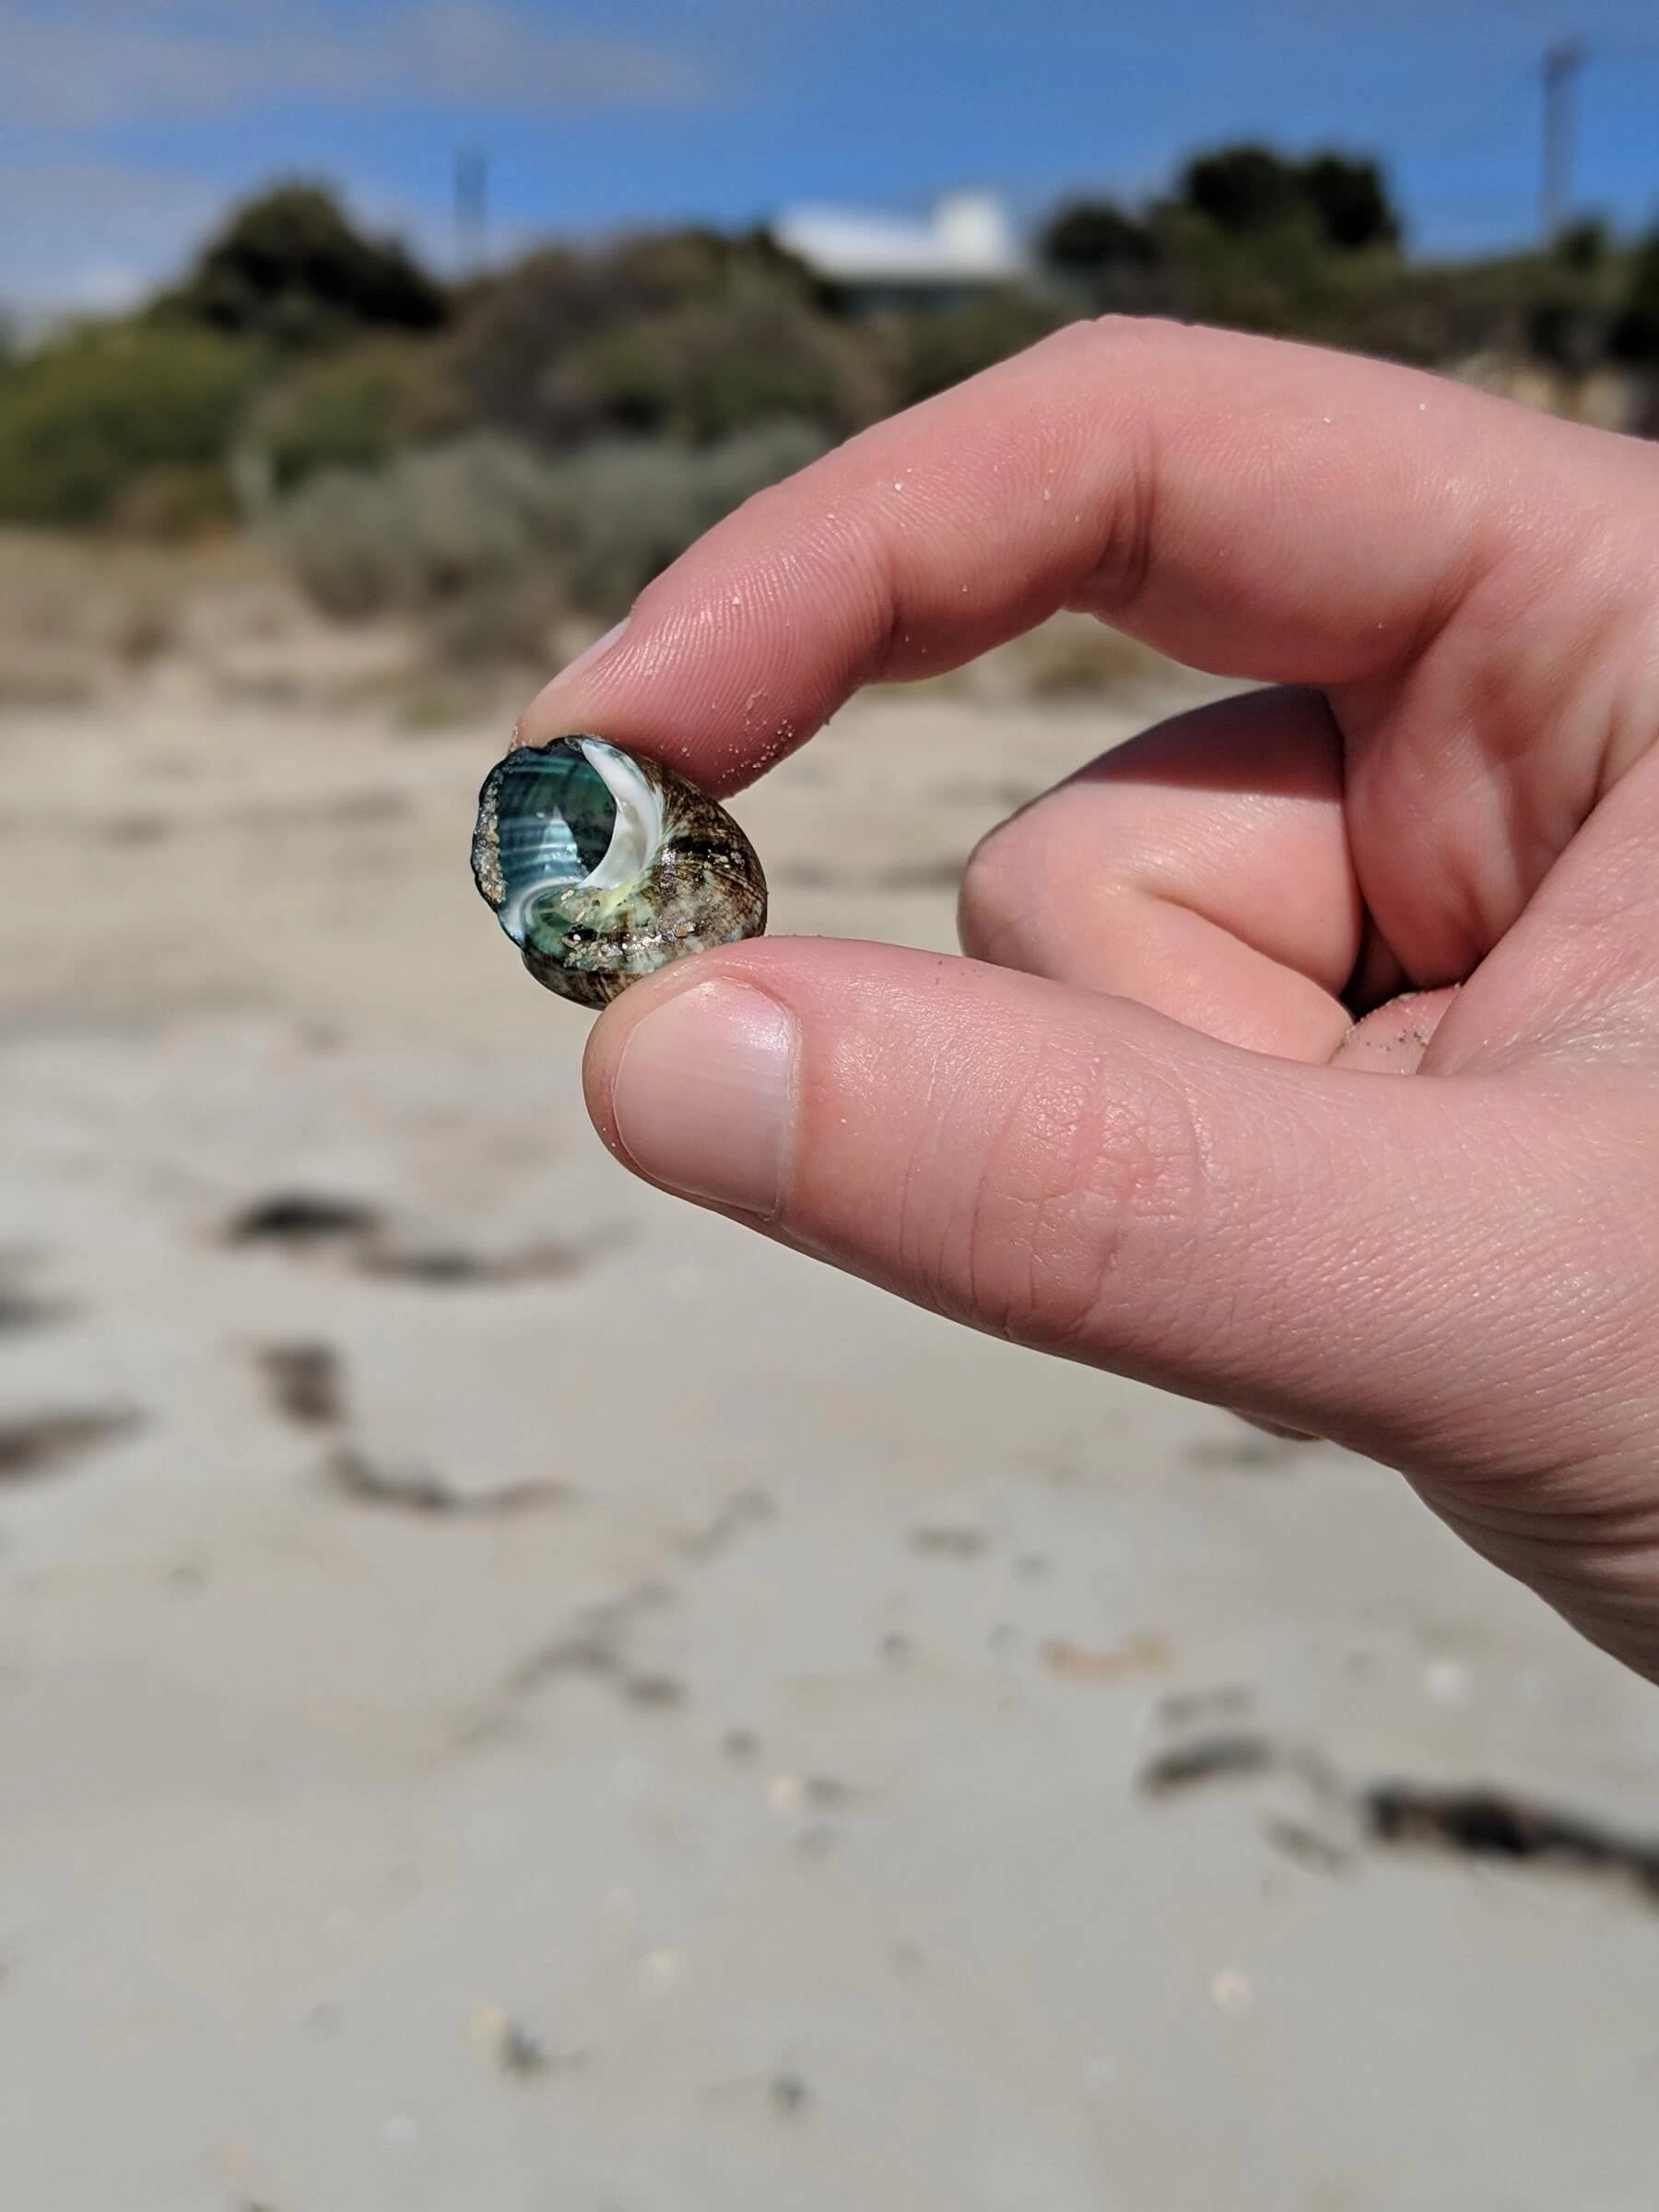 A small colourful seashell